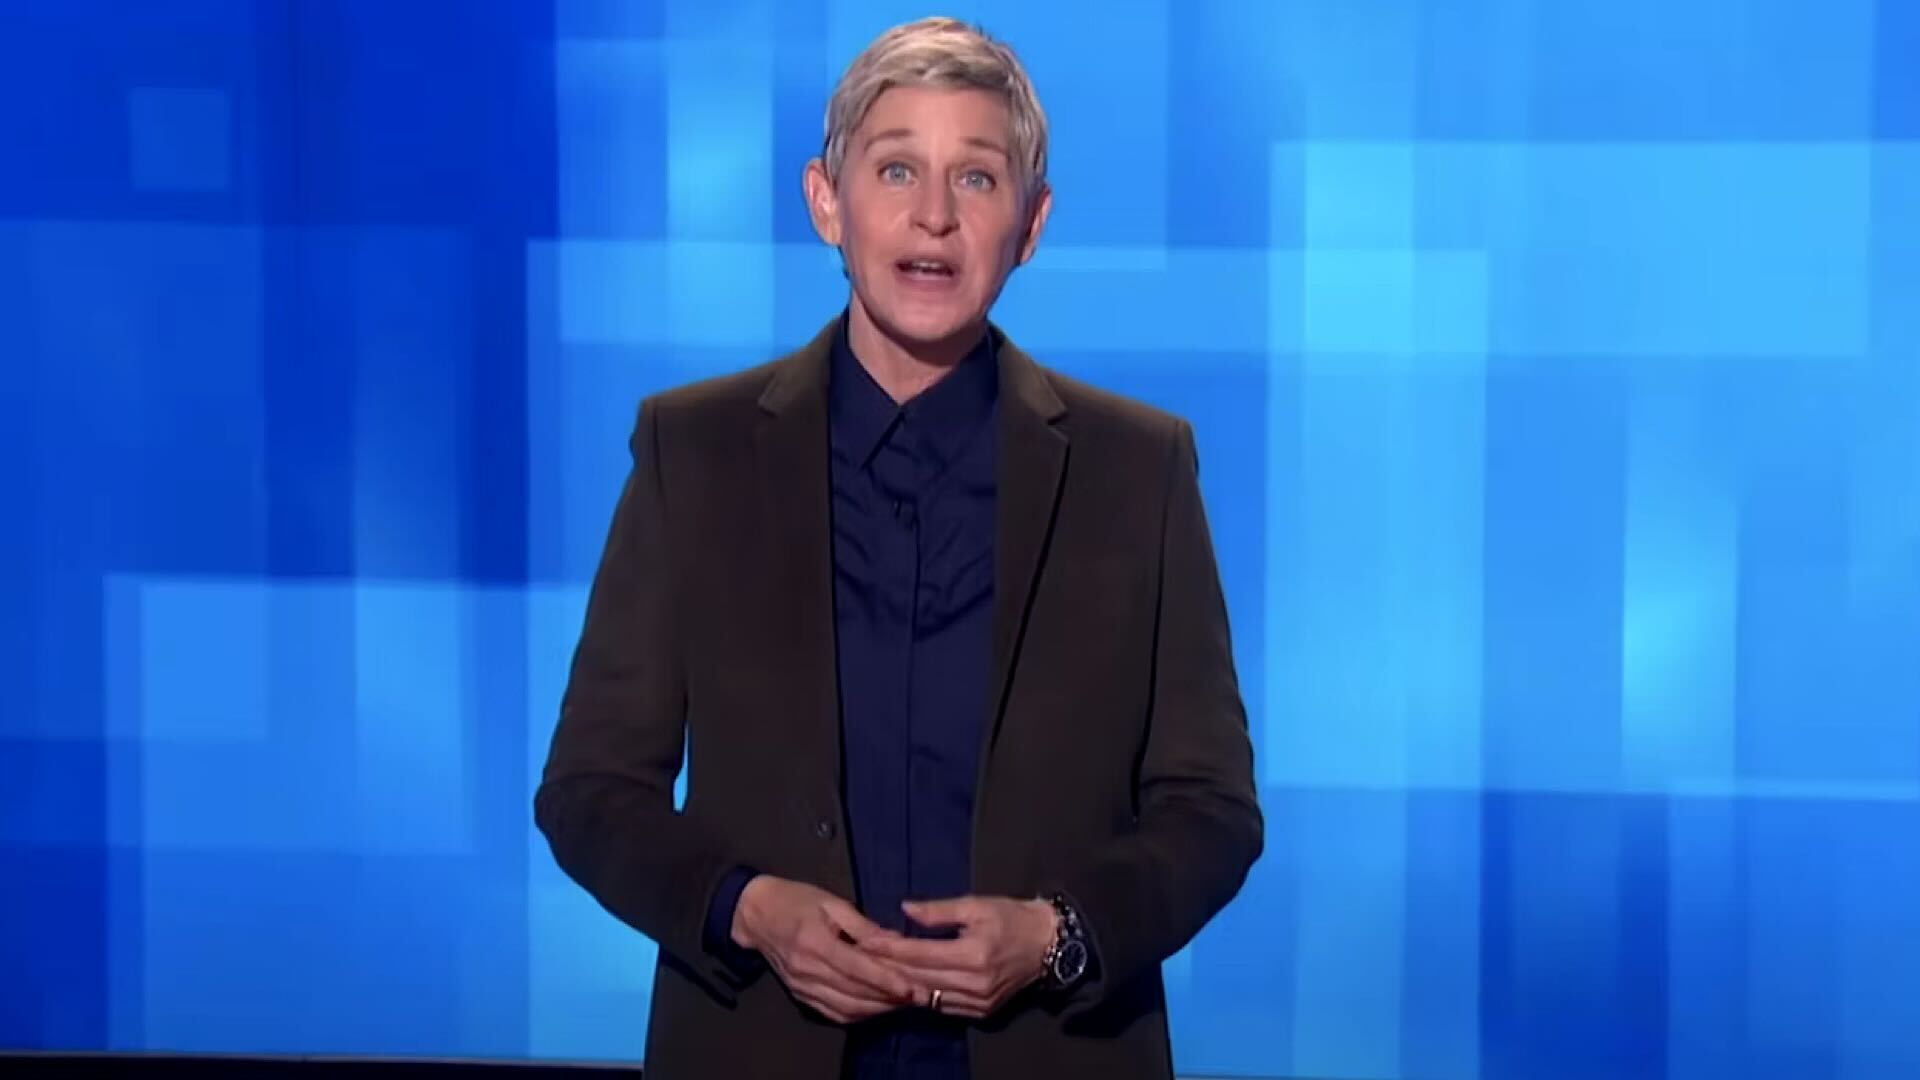 Ellen DeGeneres with hands together on a blue background